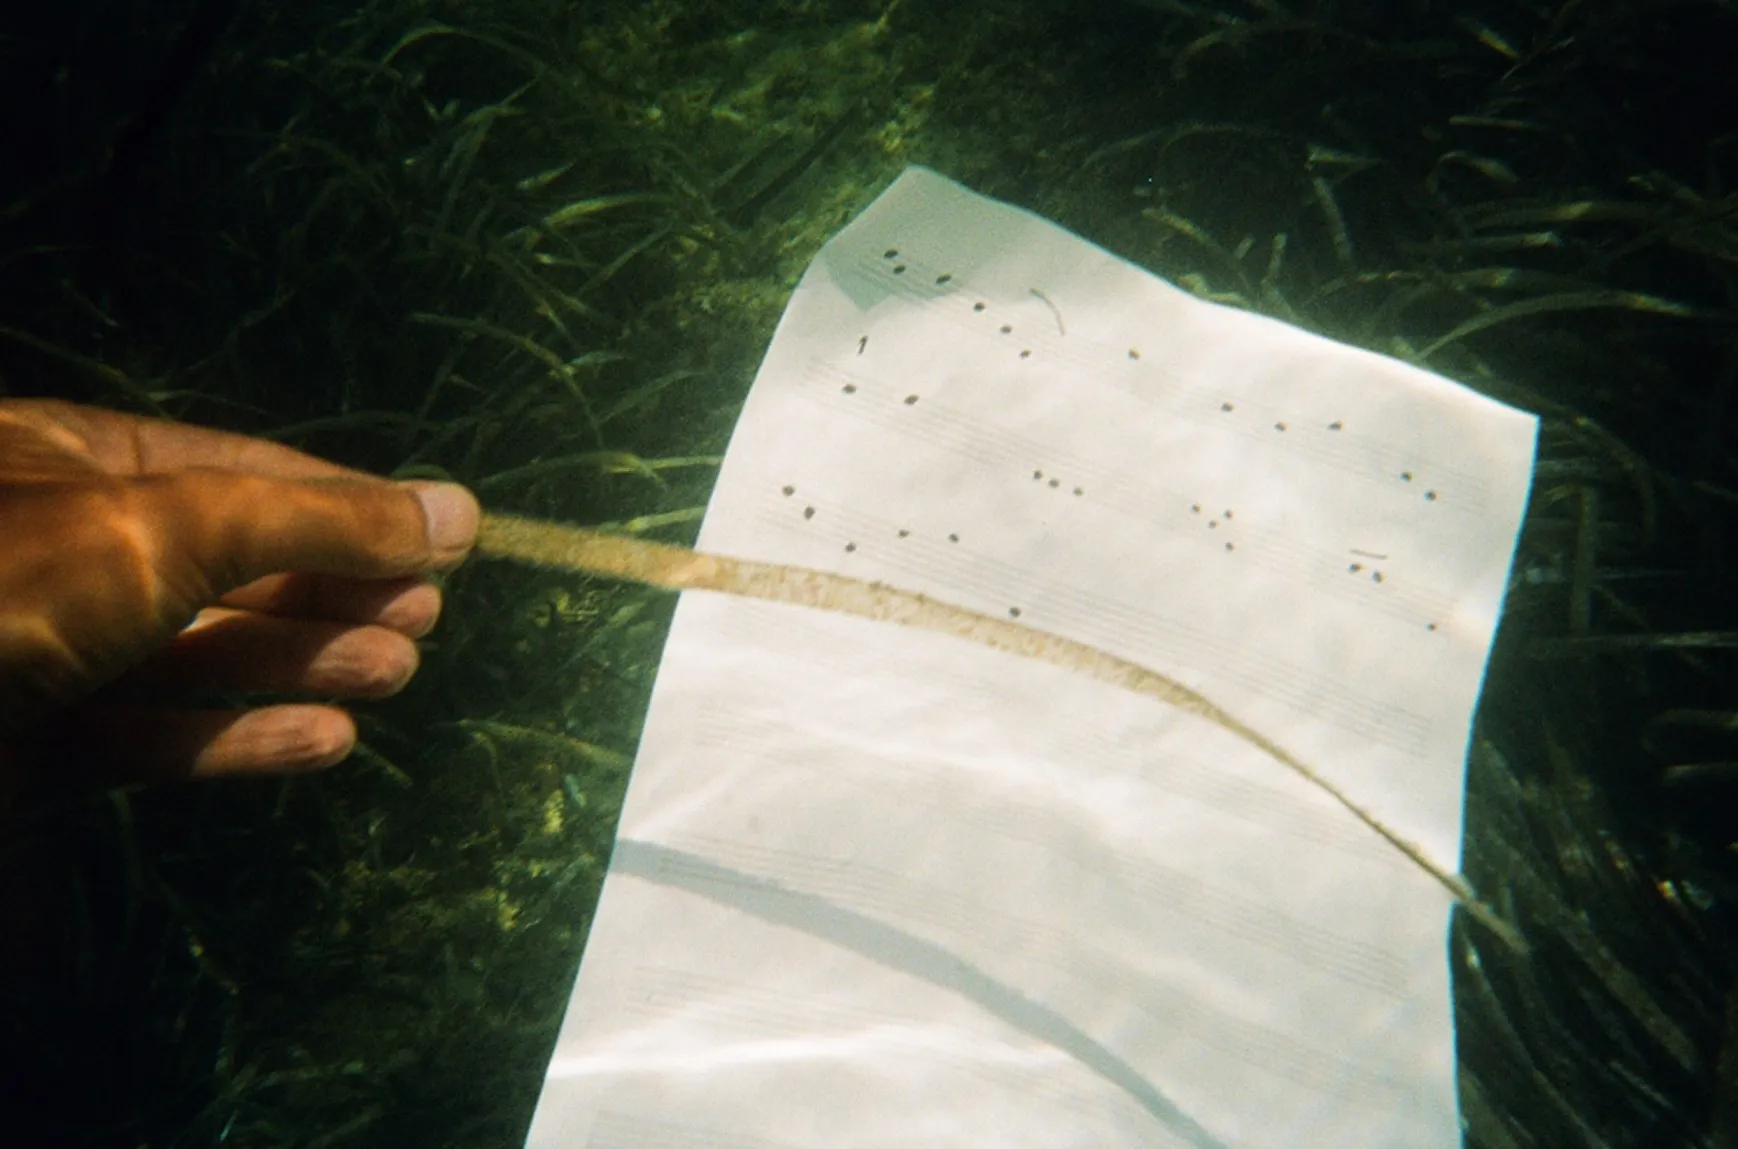 Onderwaterfoto van een papier met muziekpartituur, een hand die een stuk algen vasthoudt, omgeven door groen zeewier